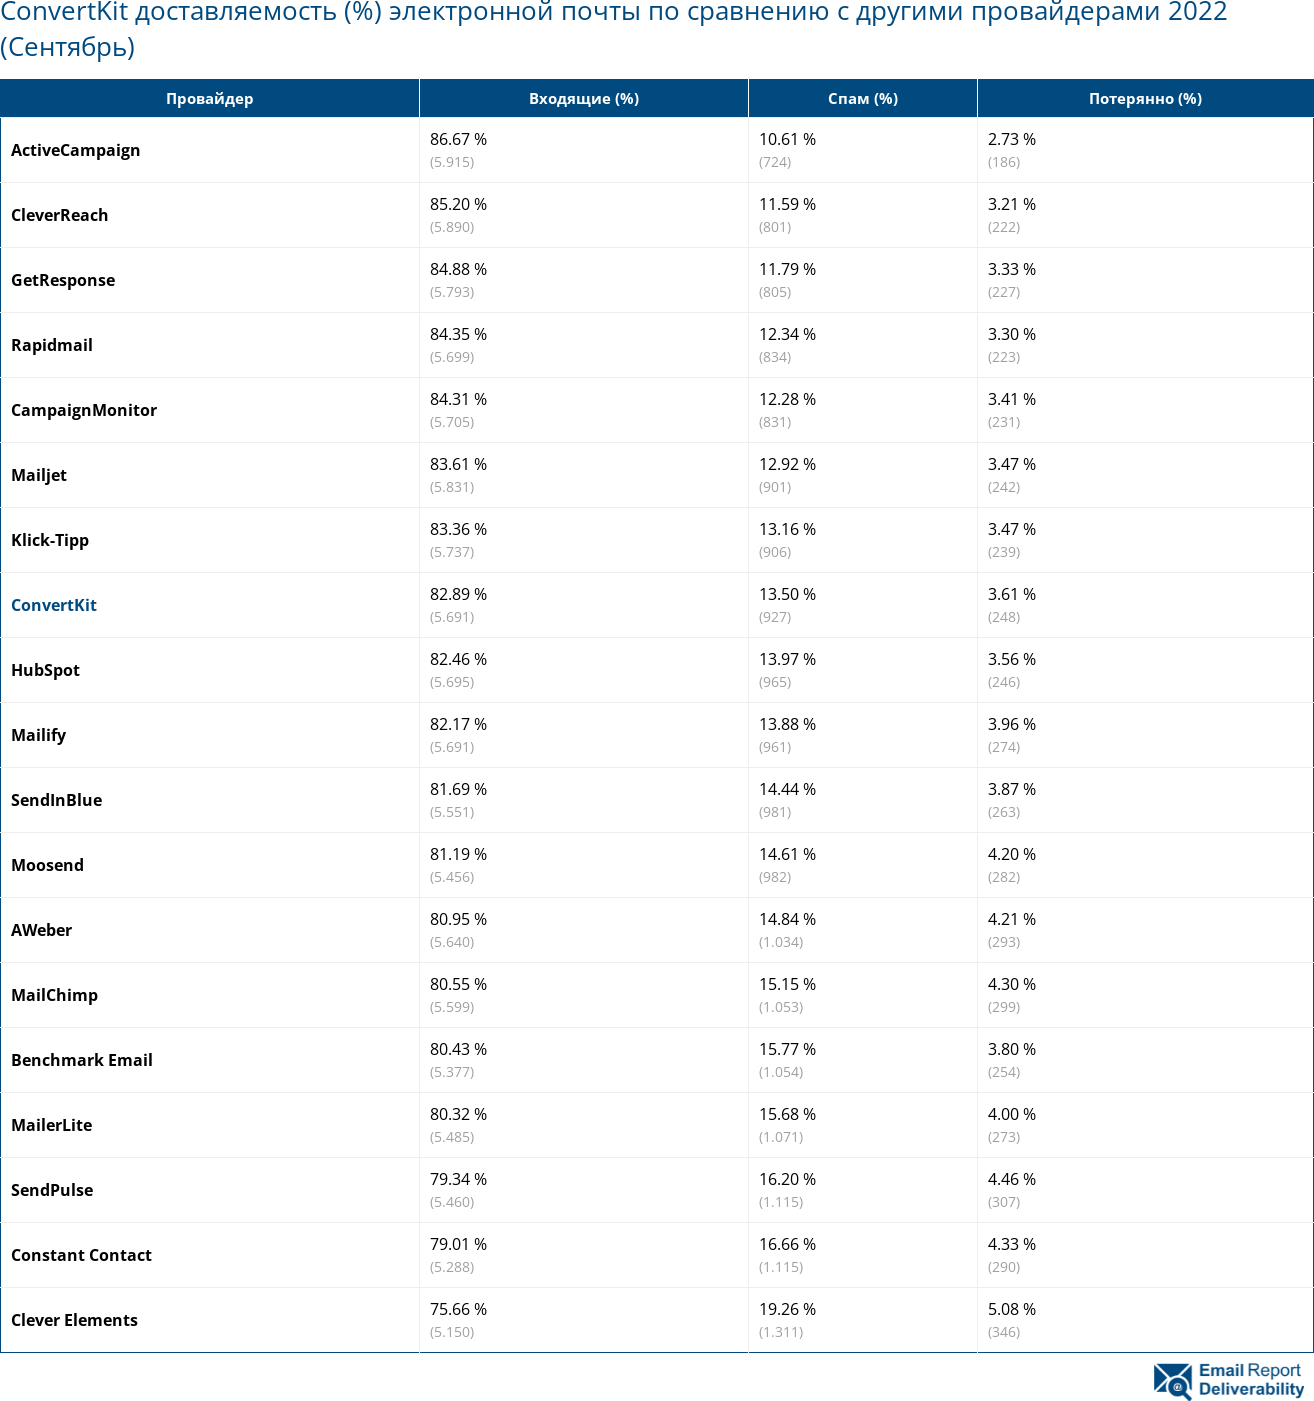 ConvertKit доставляемость (%) электронной почты по сравнению с другими провайдерами 2022 (Сентябрь)